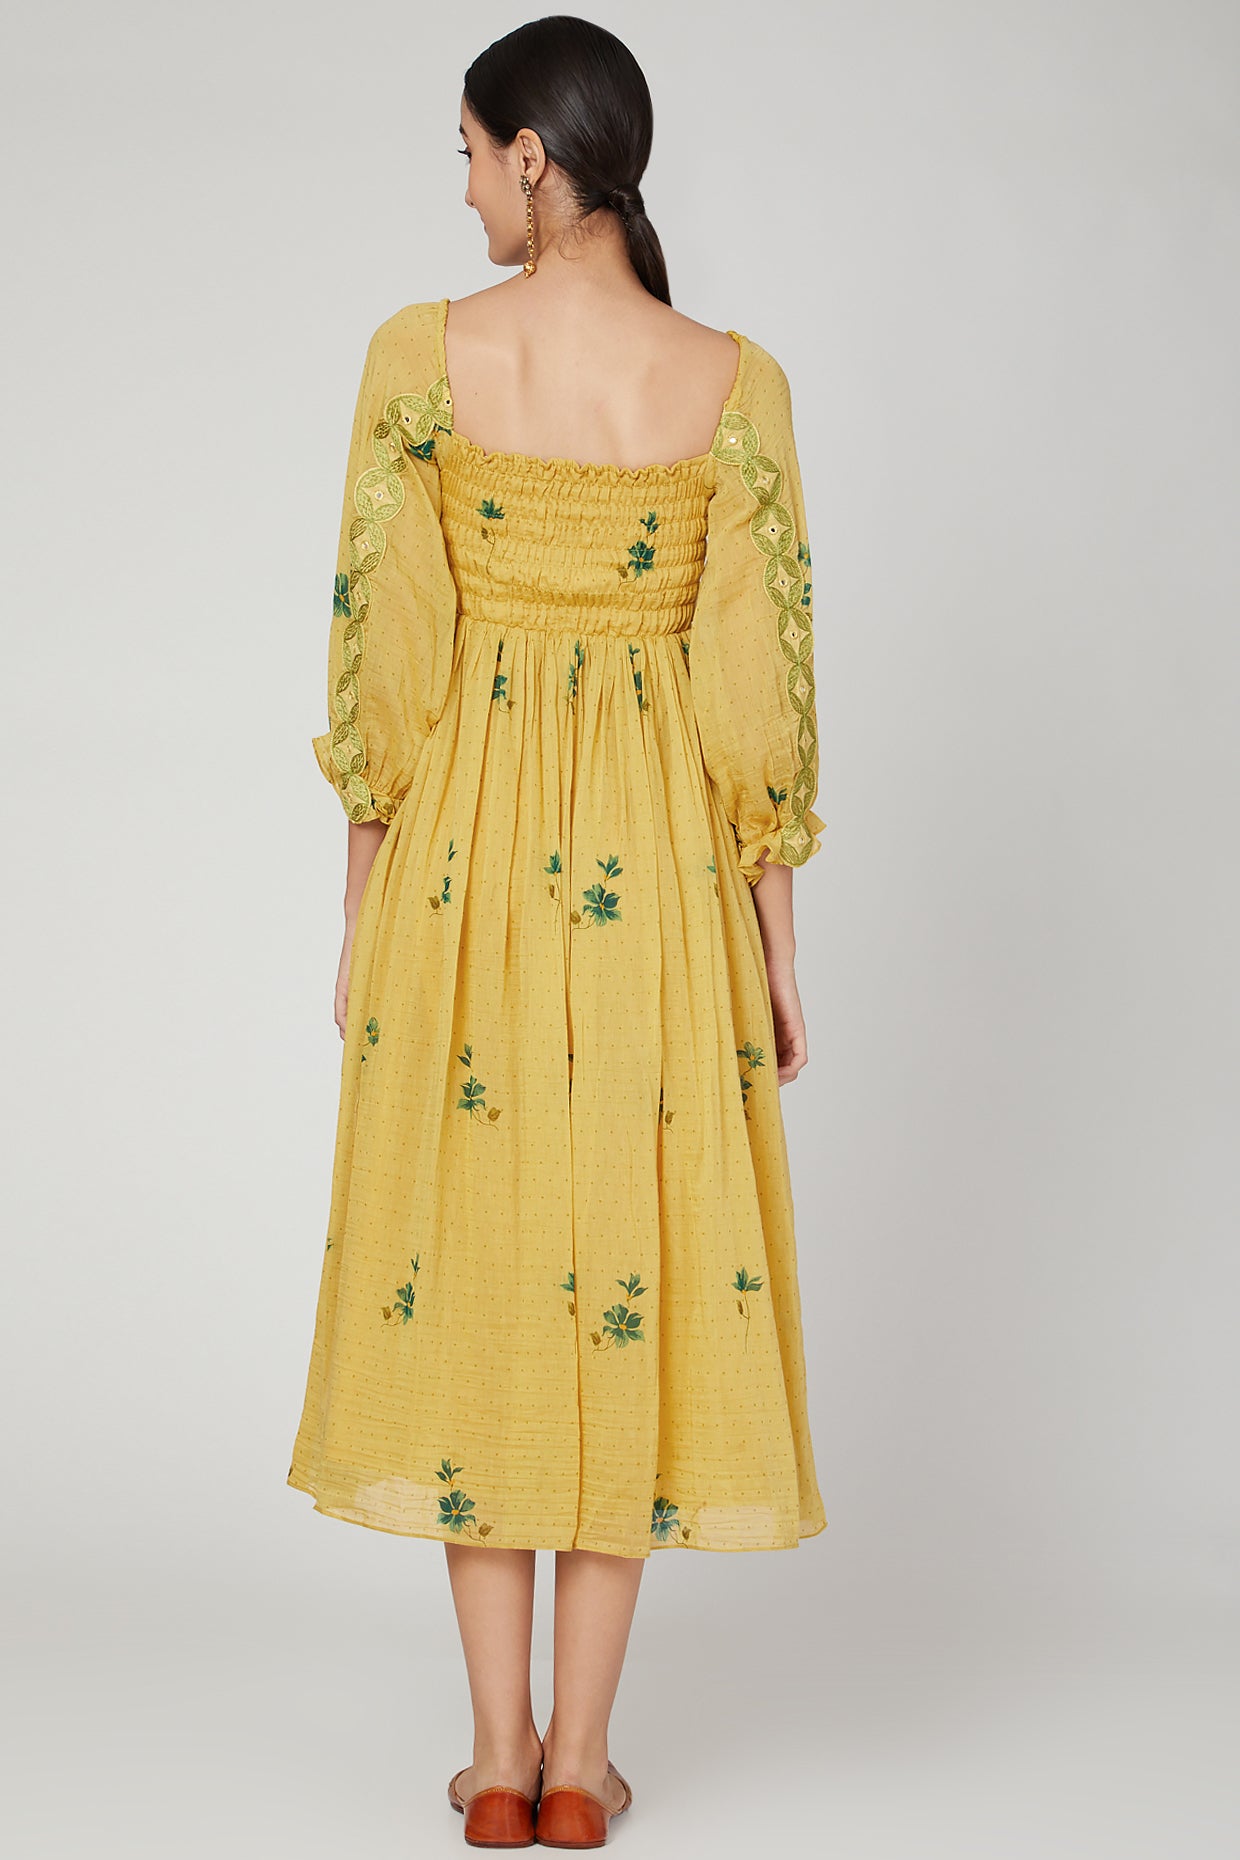 Sunset Jasmine printed dress